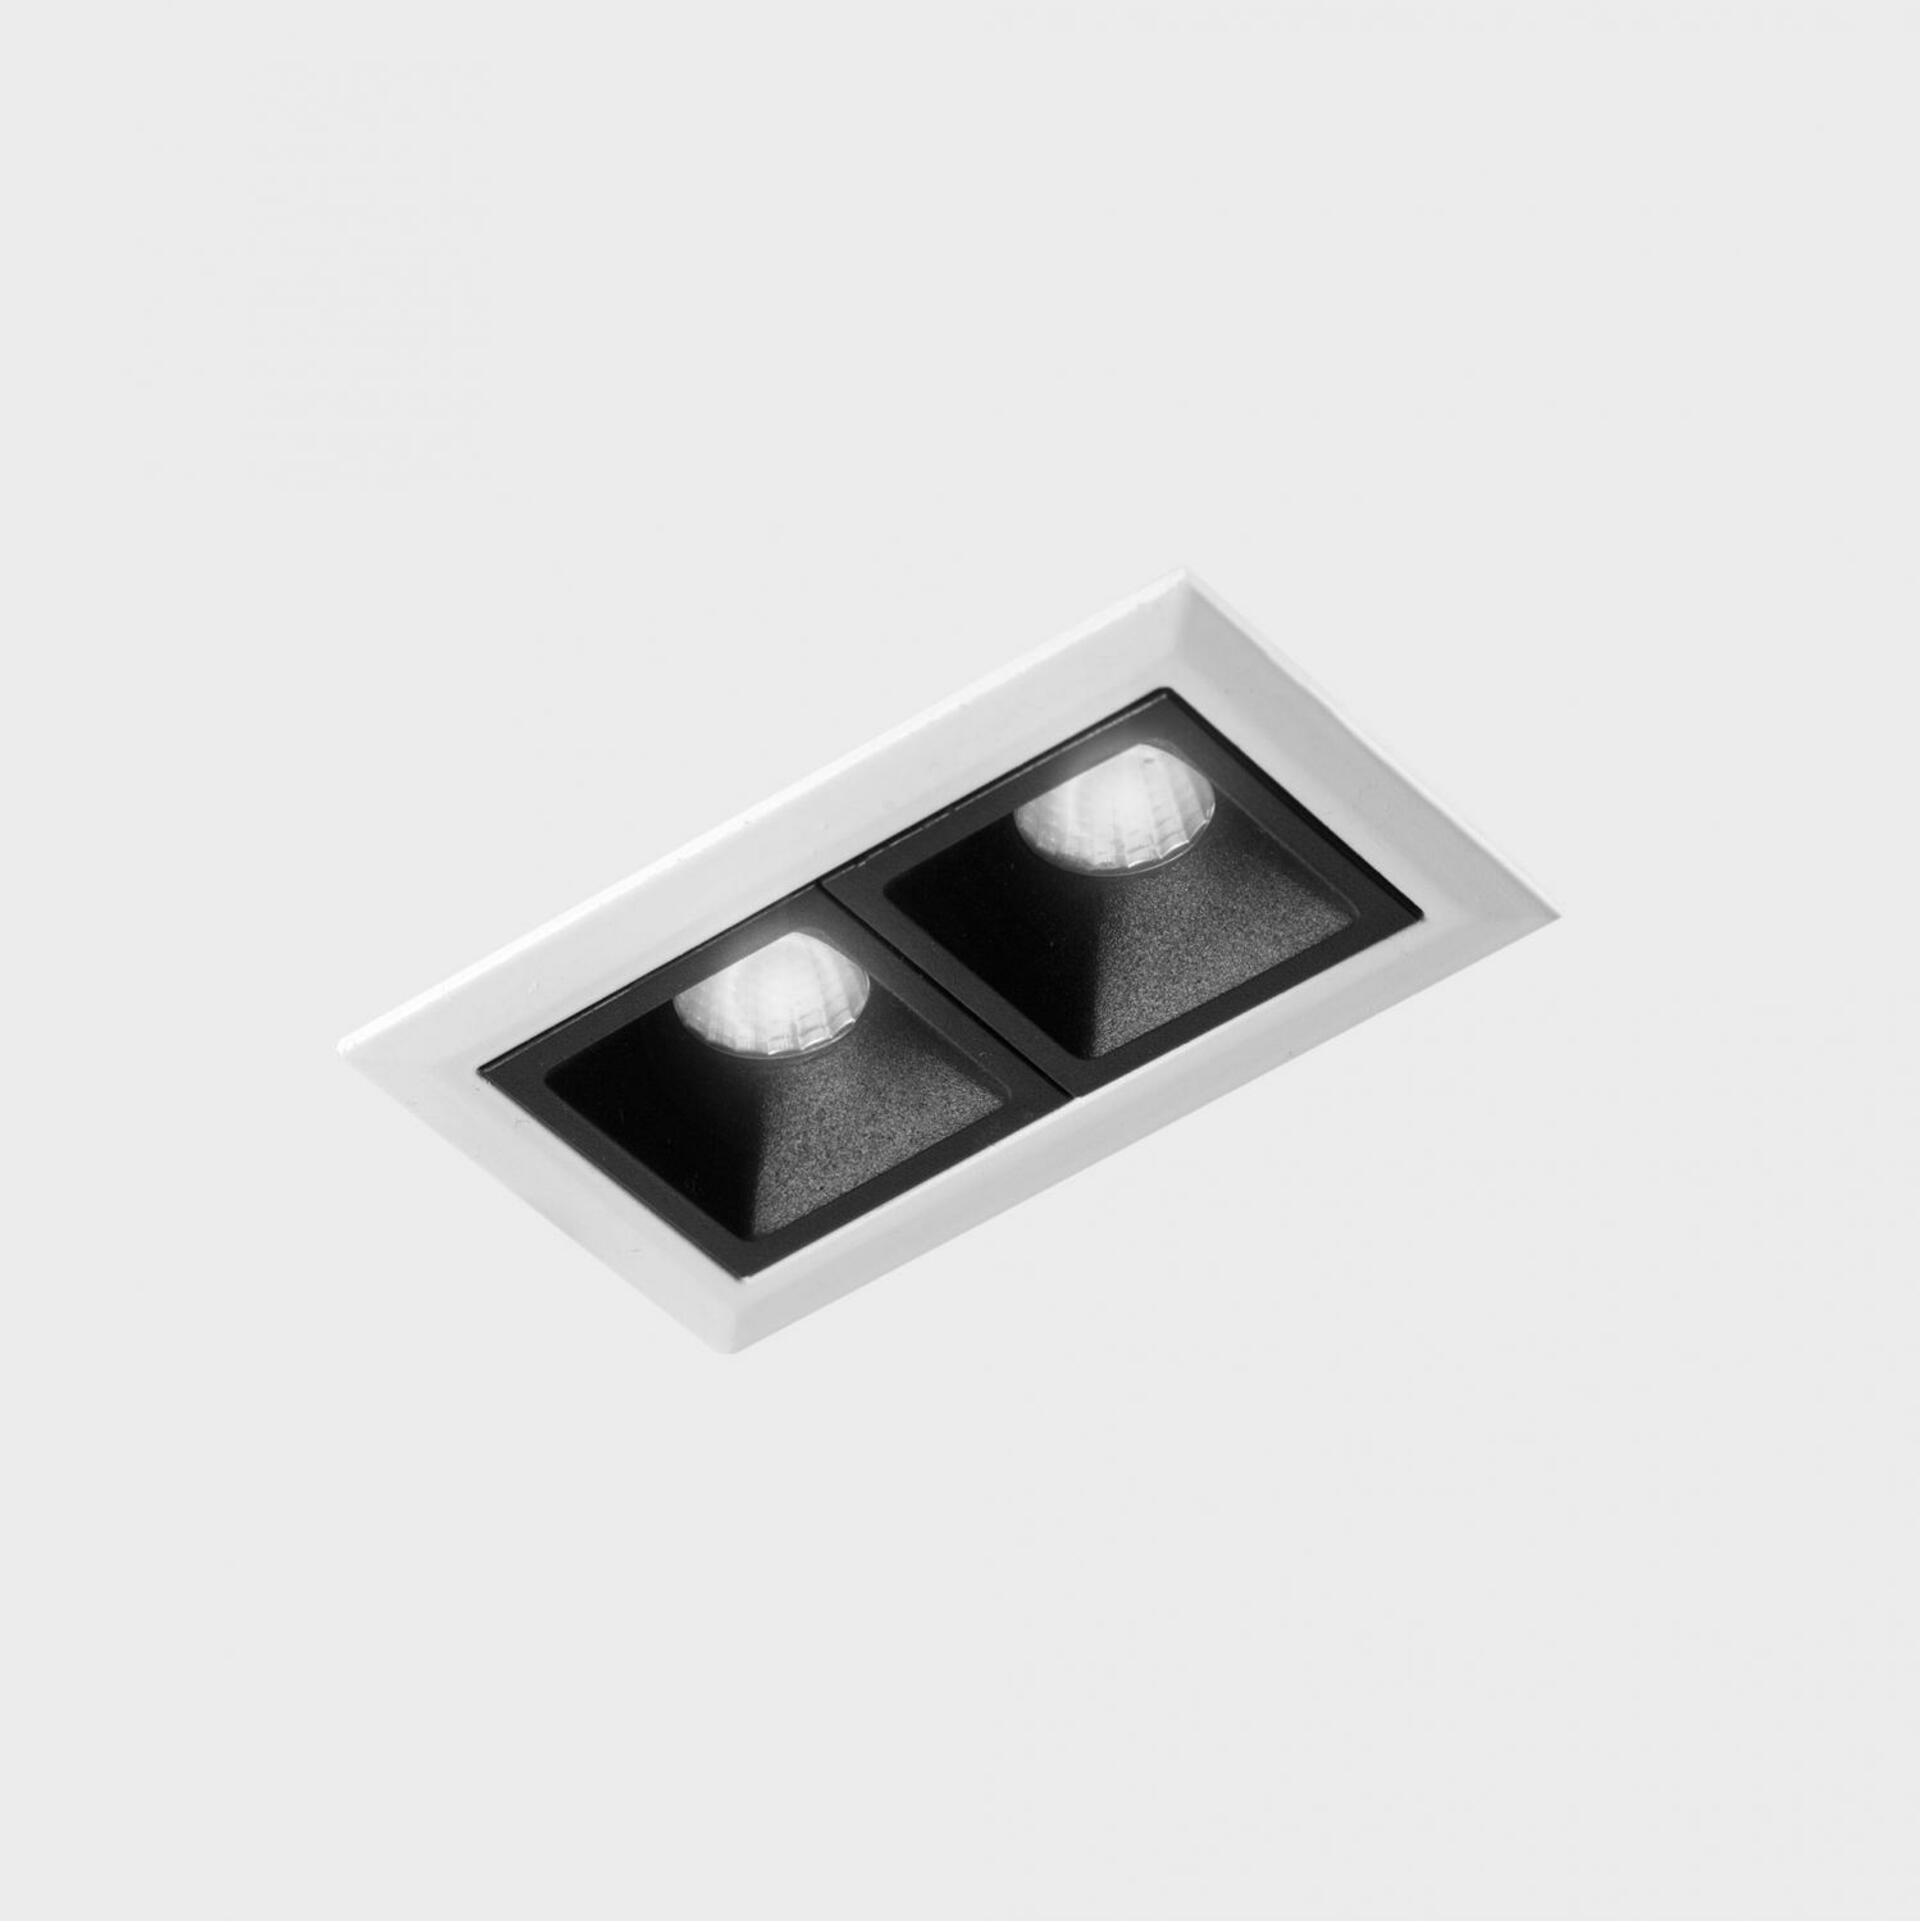 KOHL LIGHTING KOHL-Lighting NSES zapuštěné svítidlo s rámečkem 75x45 mm bílá-černá 4 W CRI 90 3000K PUSH